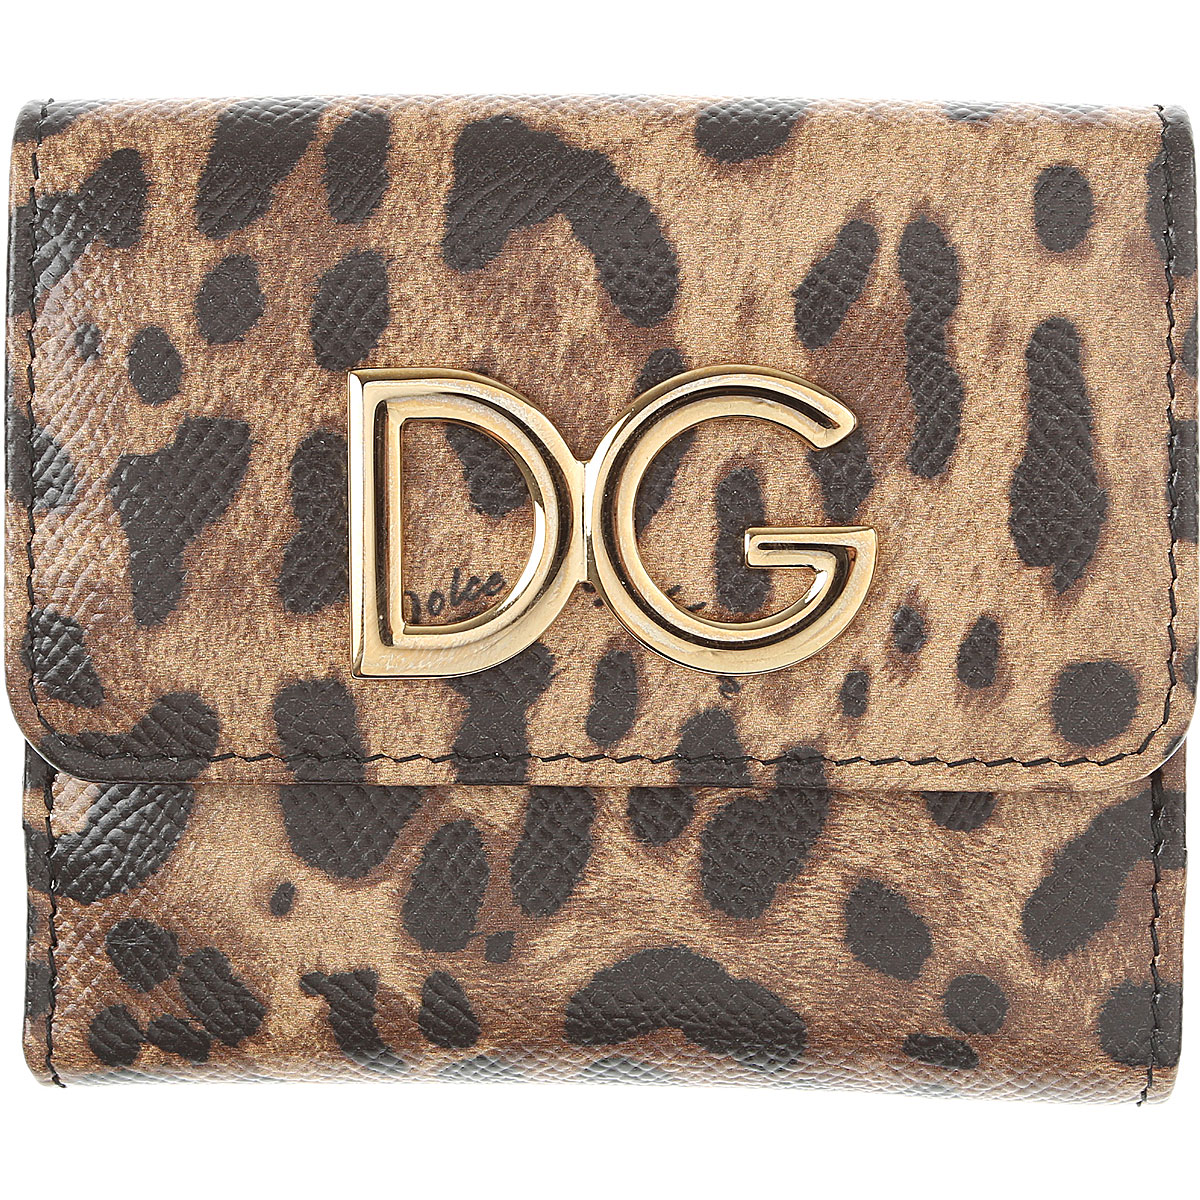 Dolce & Gabbana Brieftasche für Damen, Portemonnaie, Geldbörsen, Geldbeutel Günstig im Sale, Leopardenfarbig, Leder, 2017